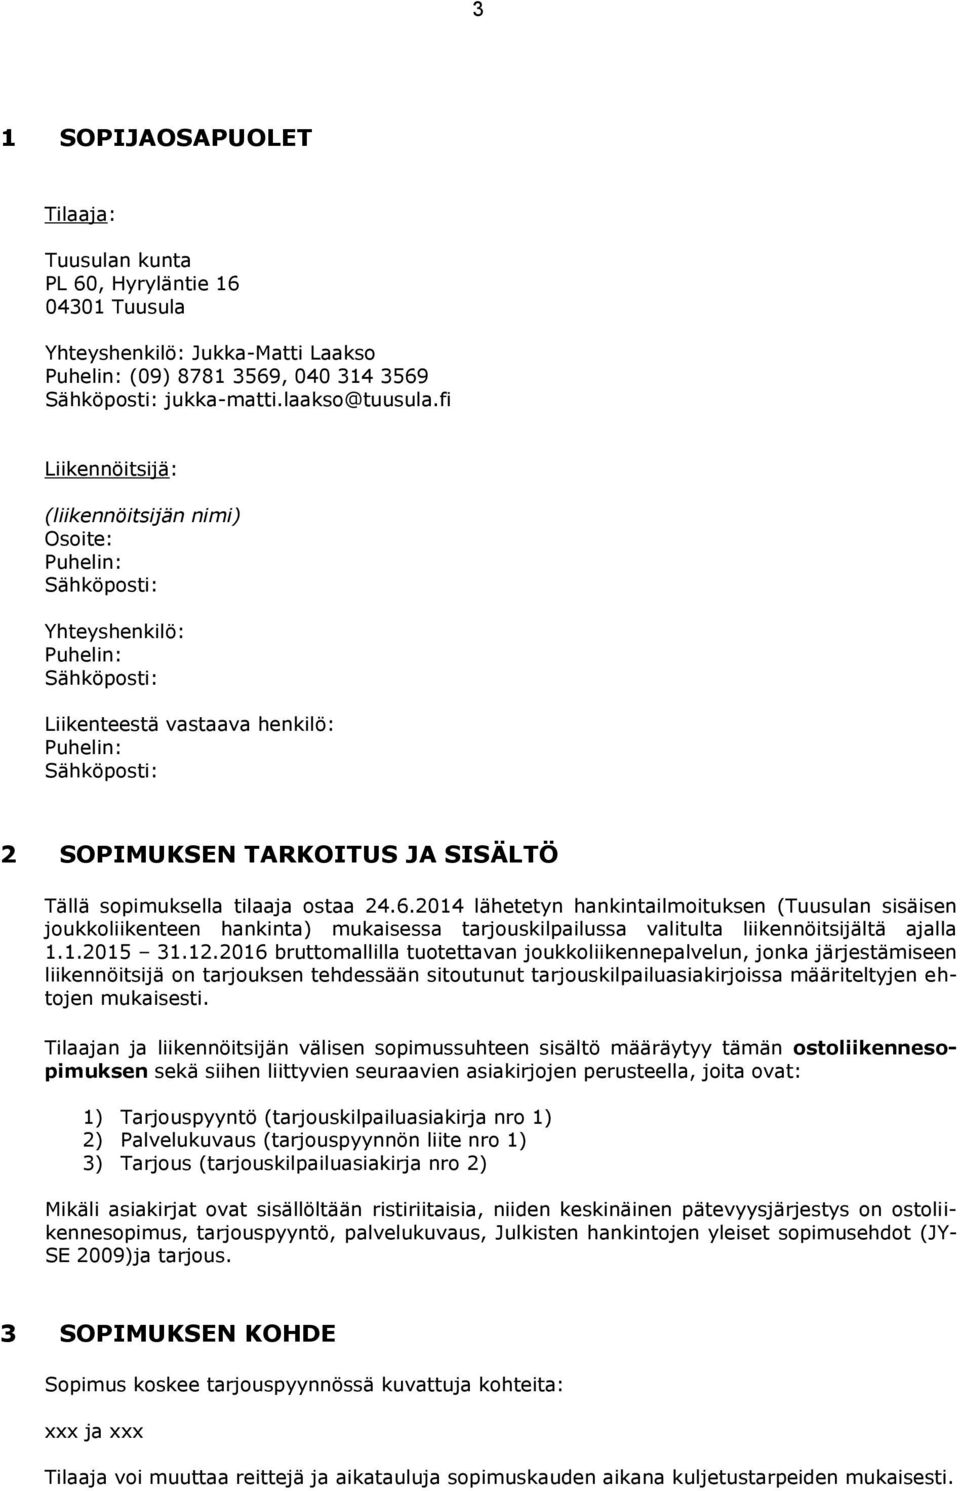 sopimuksella tilaaja ostaa 24.6.2014 lähetetyn hankintailmoituksen (Tuusulan sisäisen joukkoliikenteen hankinta) mukaisessa tarjouskilpailussa valitulta liikennöitsijältä ajalla 1.1.2015 31.12.